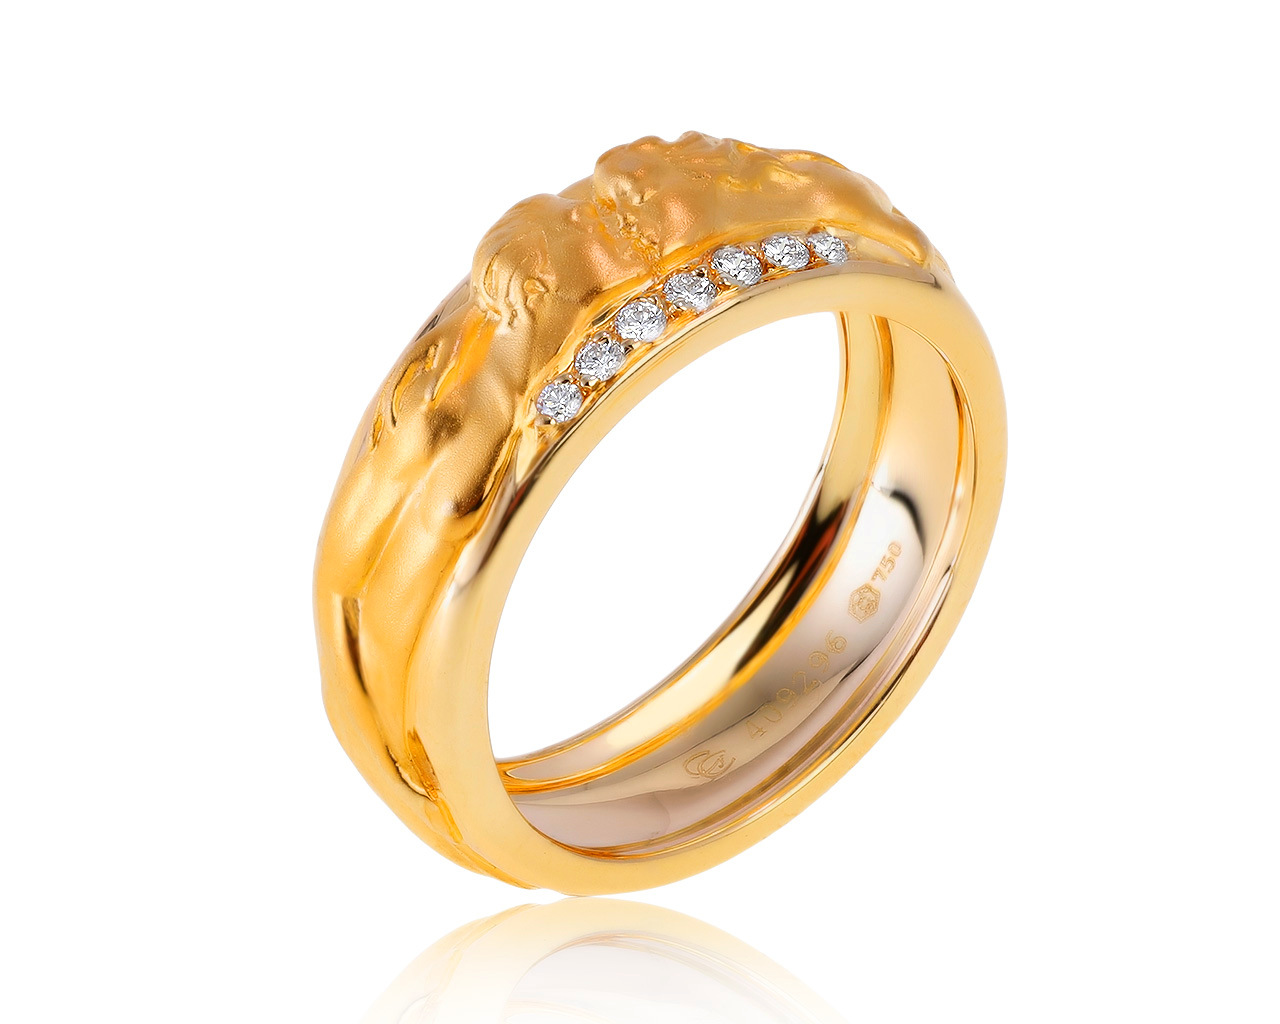 Оригинальное золотое кольцо Carrera y Carrera Promesa 260121/1